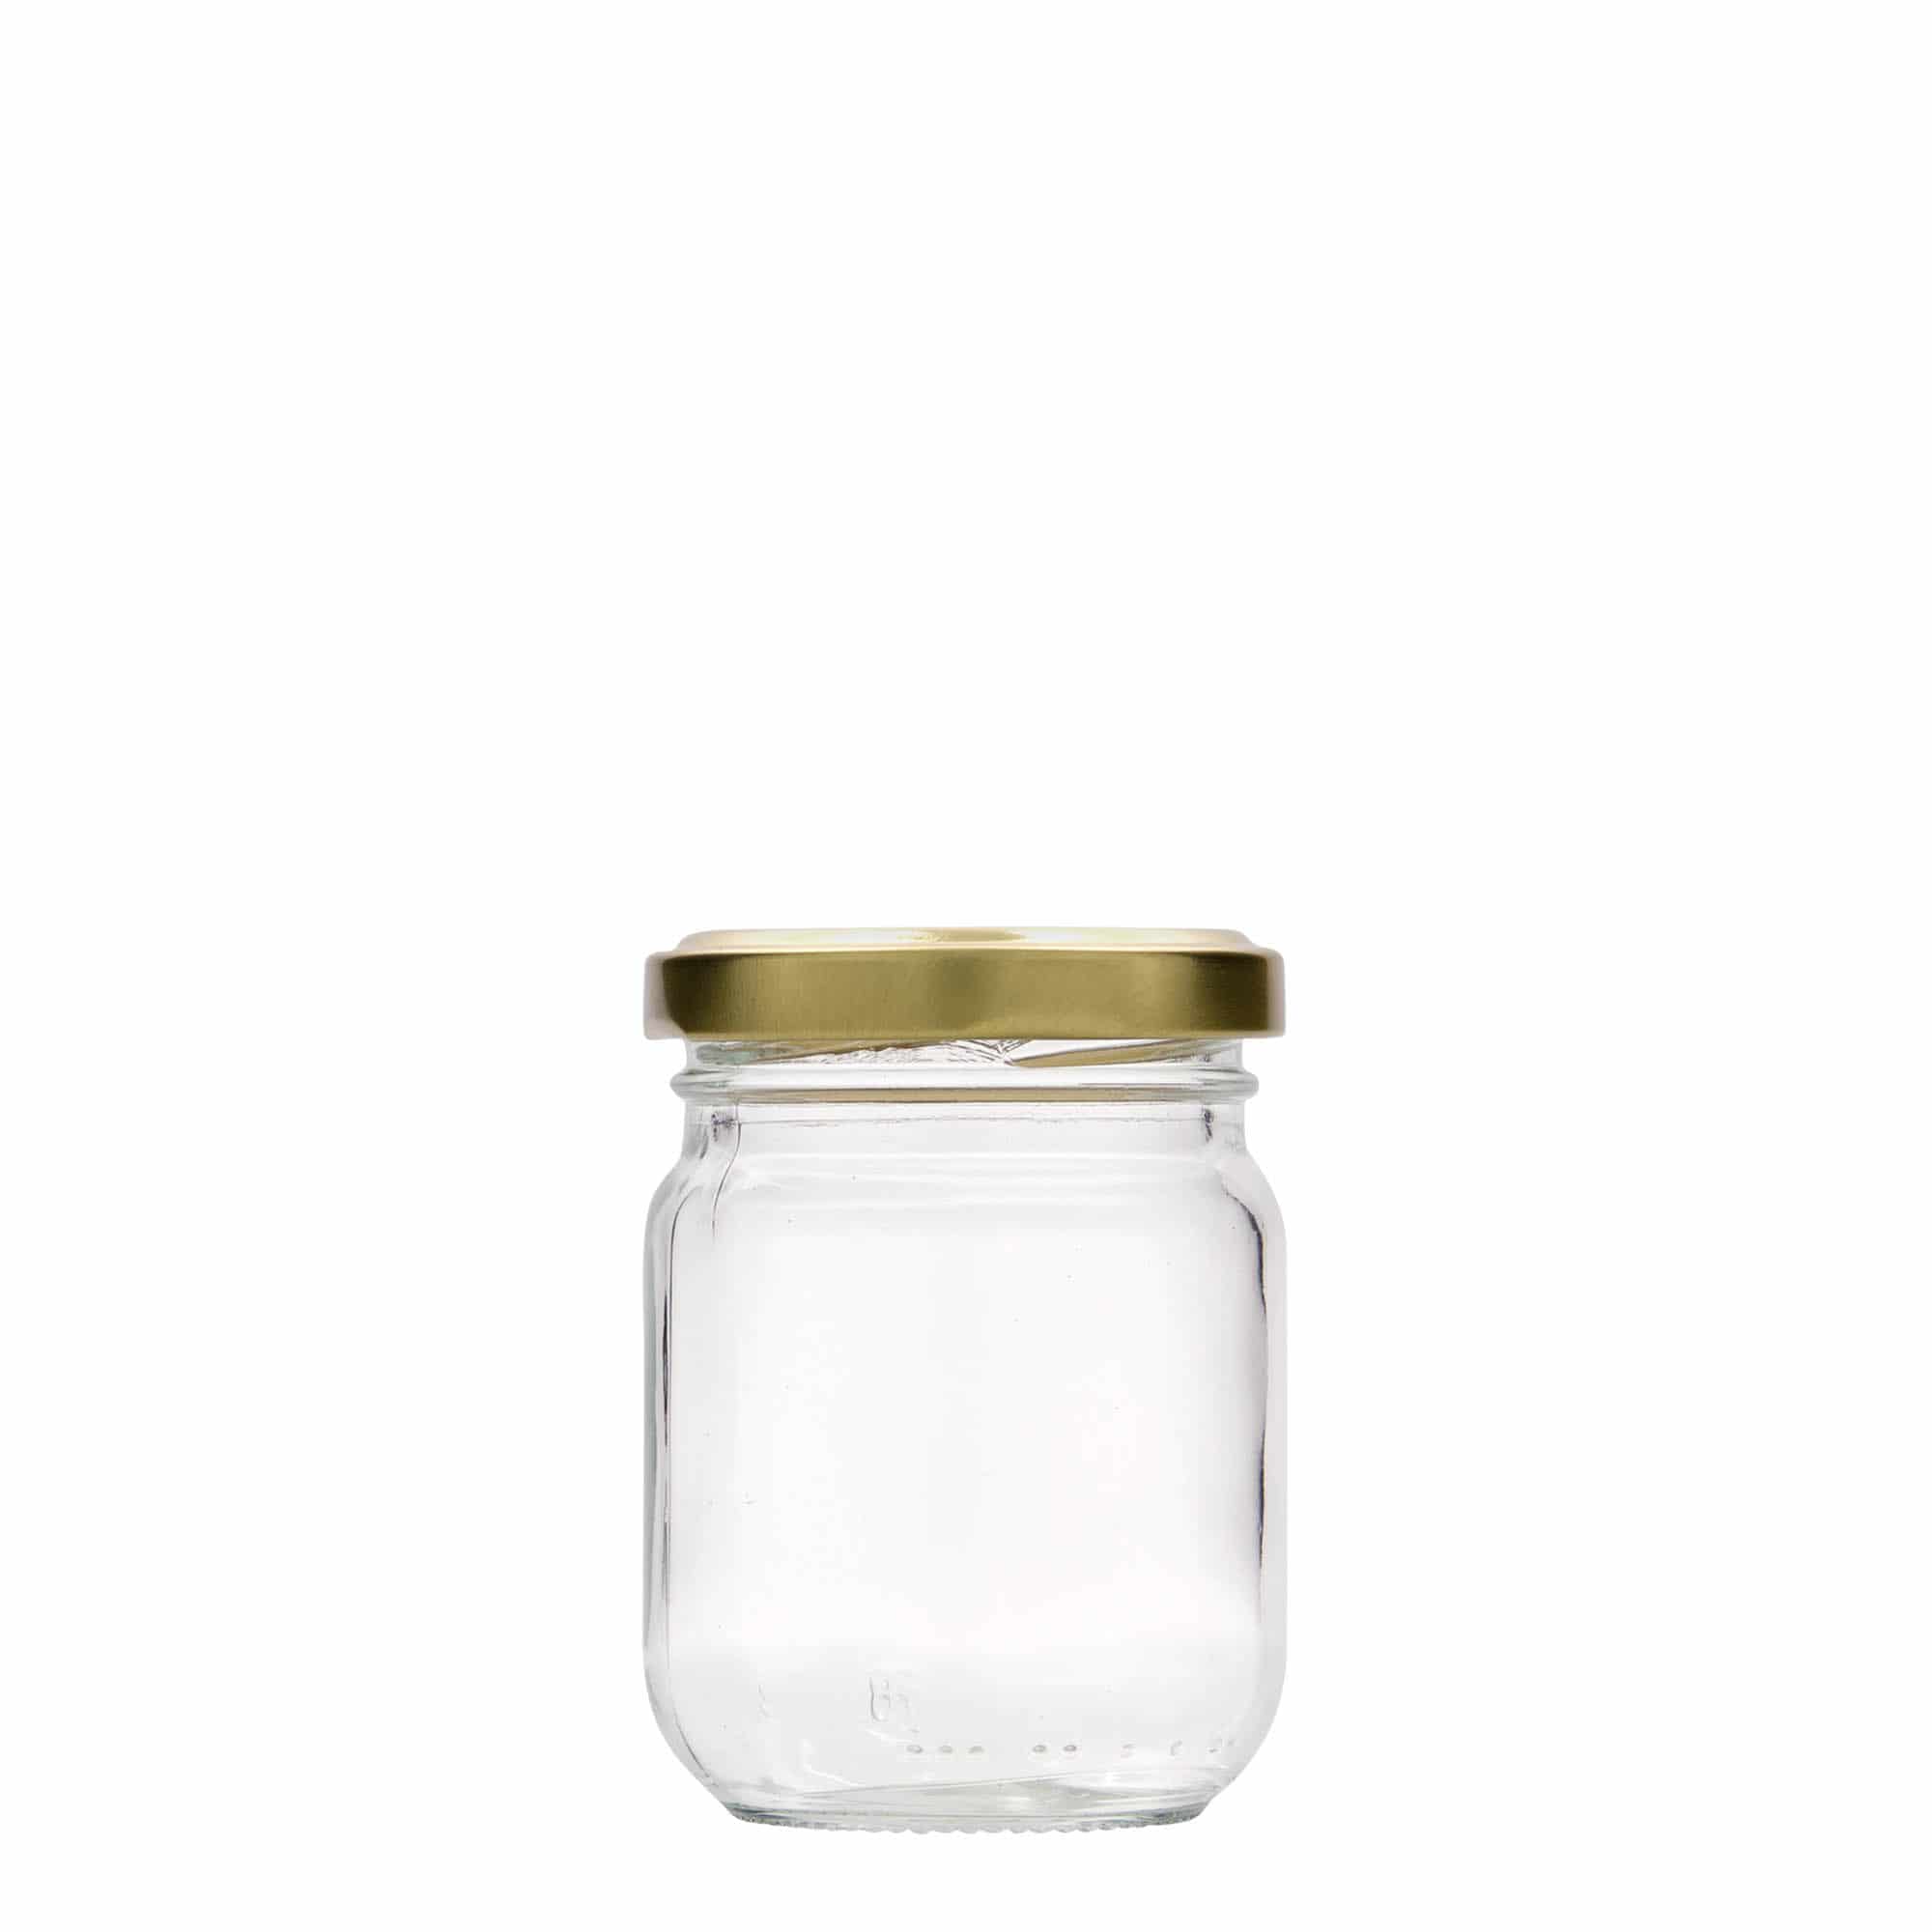 130 ml tall round jar, closure: twist off (TO 53)